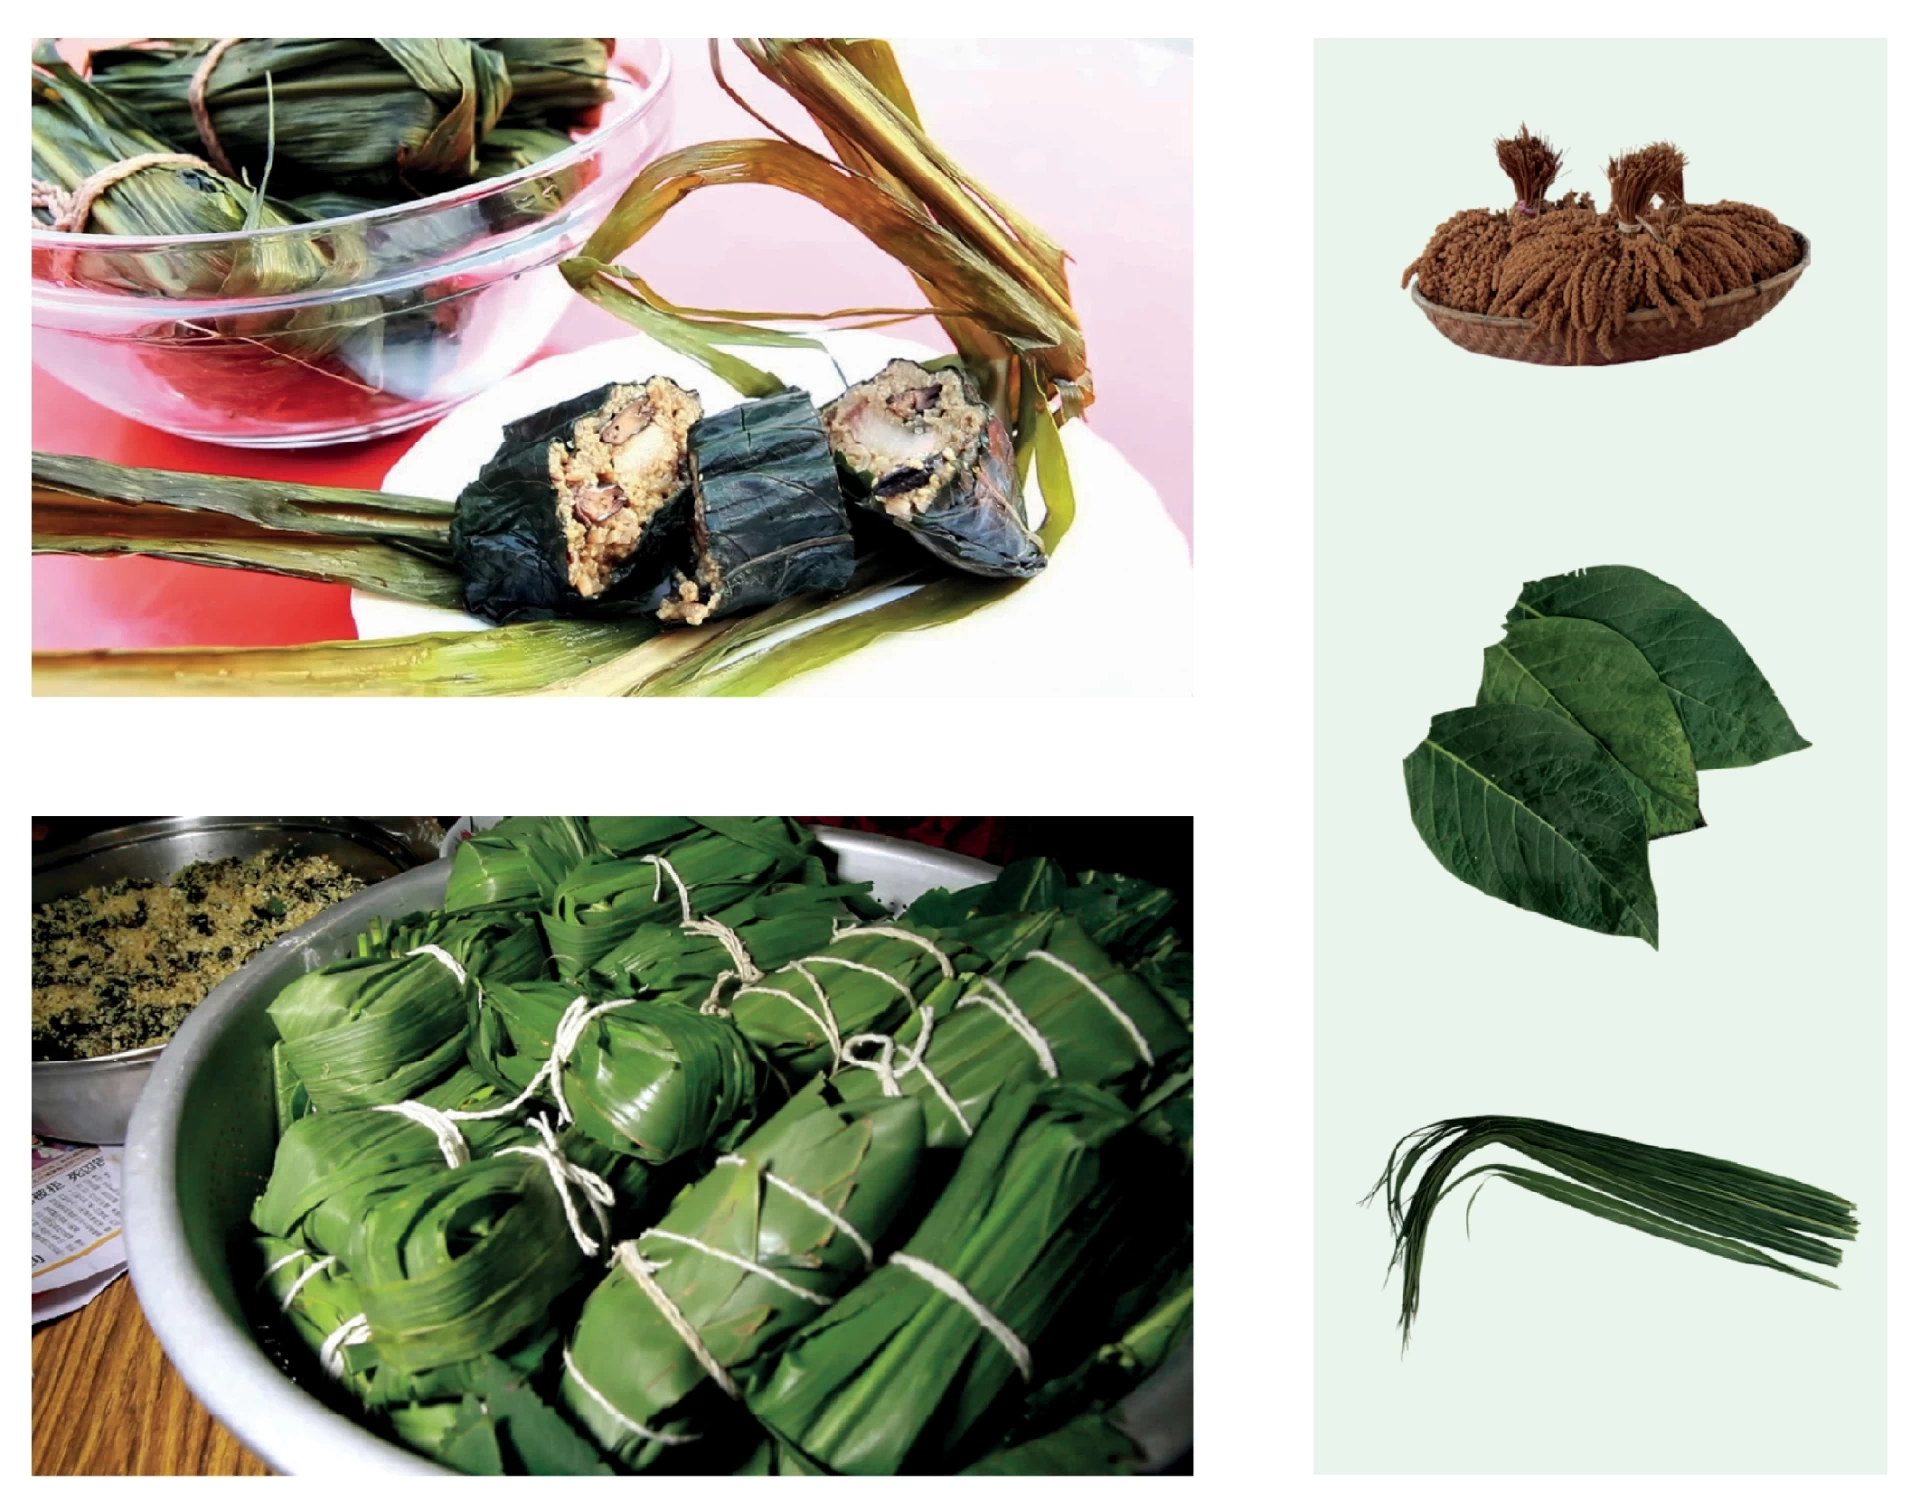 （左上）煮好後切開的cinavu，（左下）包好、準備放入鍋的cinavu，後方是餡料；（右圖）小米（vagu）：跨及許多台灣原住民族群的重要傳統作物，同時也扮演著文化信仰的中心；假酸漿葉：可與餡料一起食用的內層包葉，內含植物鹼可幫助消化，對胃相當好；芒草：用於包裹固定食物便於煮食，不可食用，也經常用在祭儀法器-圖片